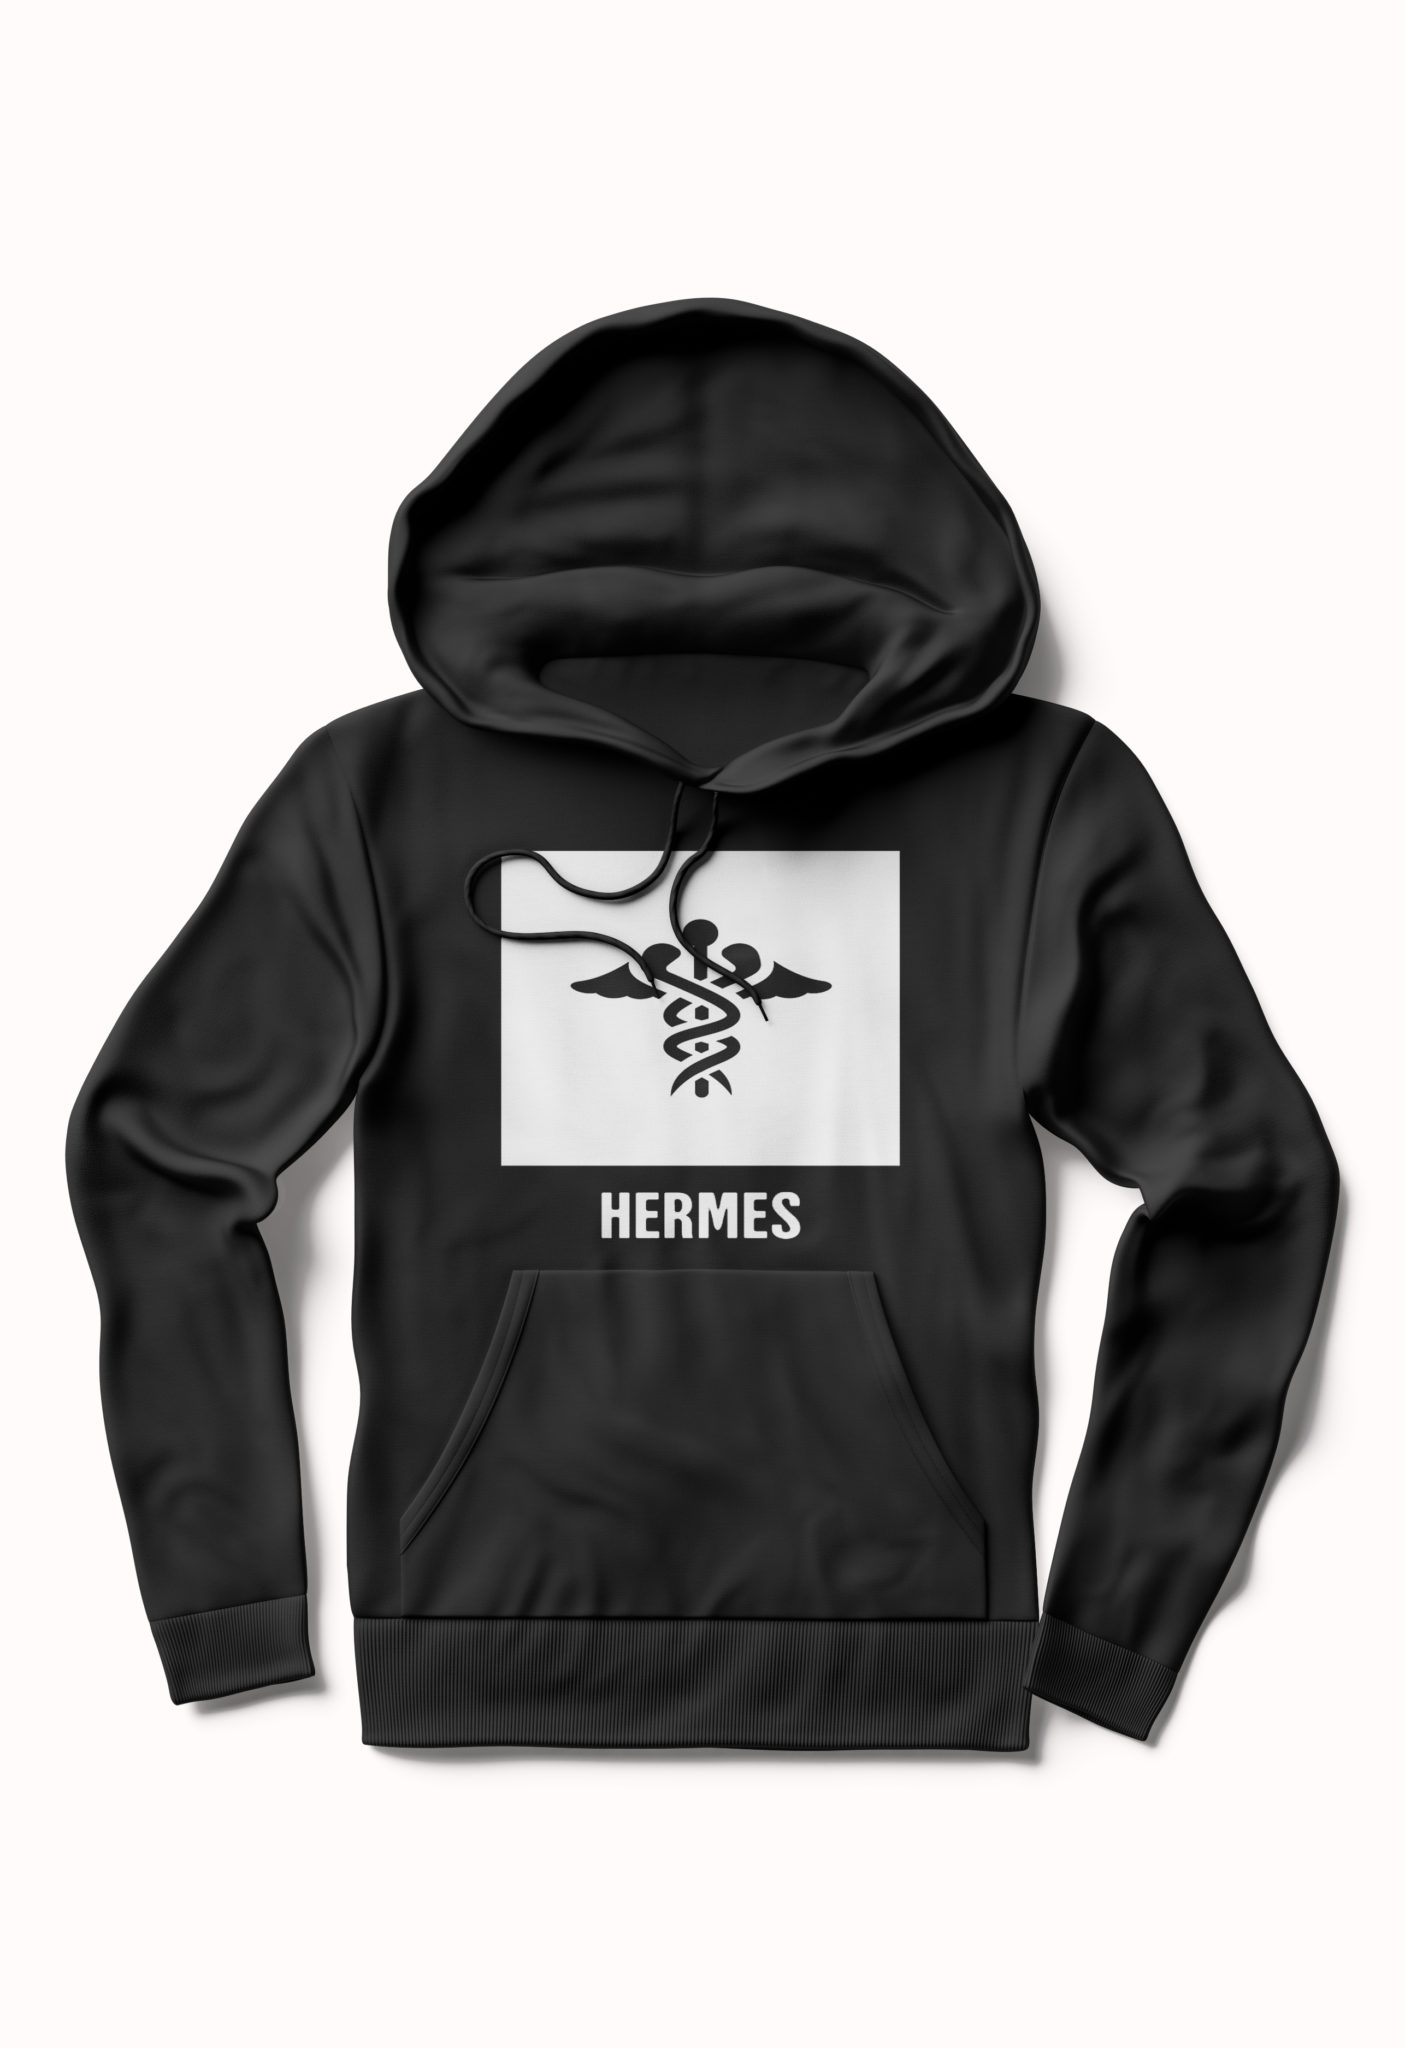 Hermes Hoodie - Swag Shirts